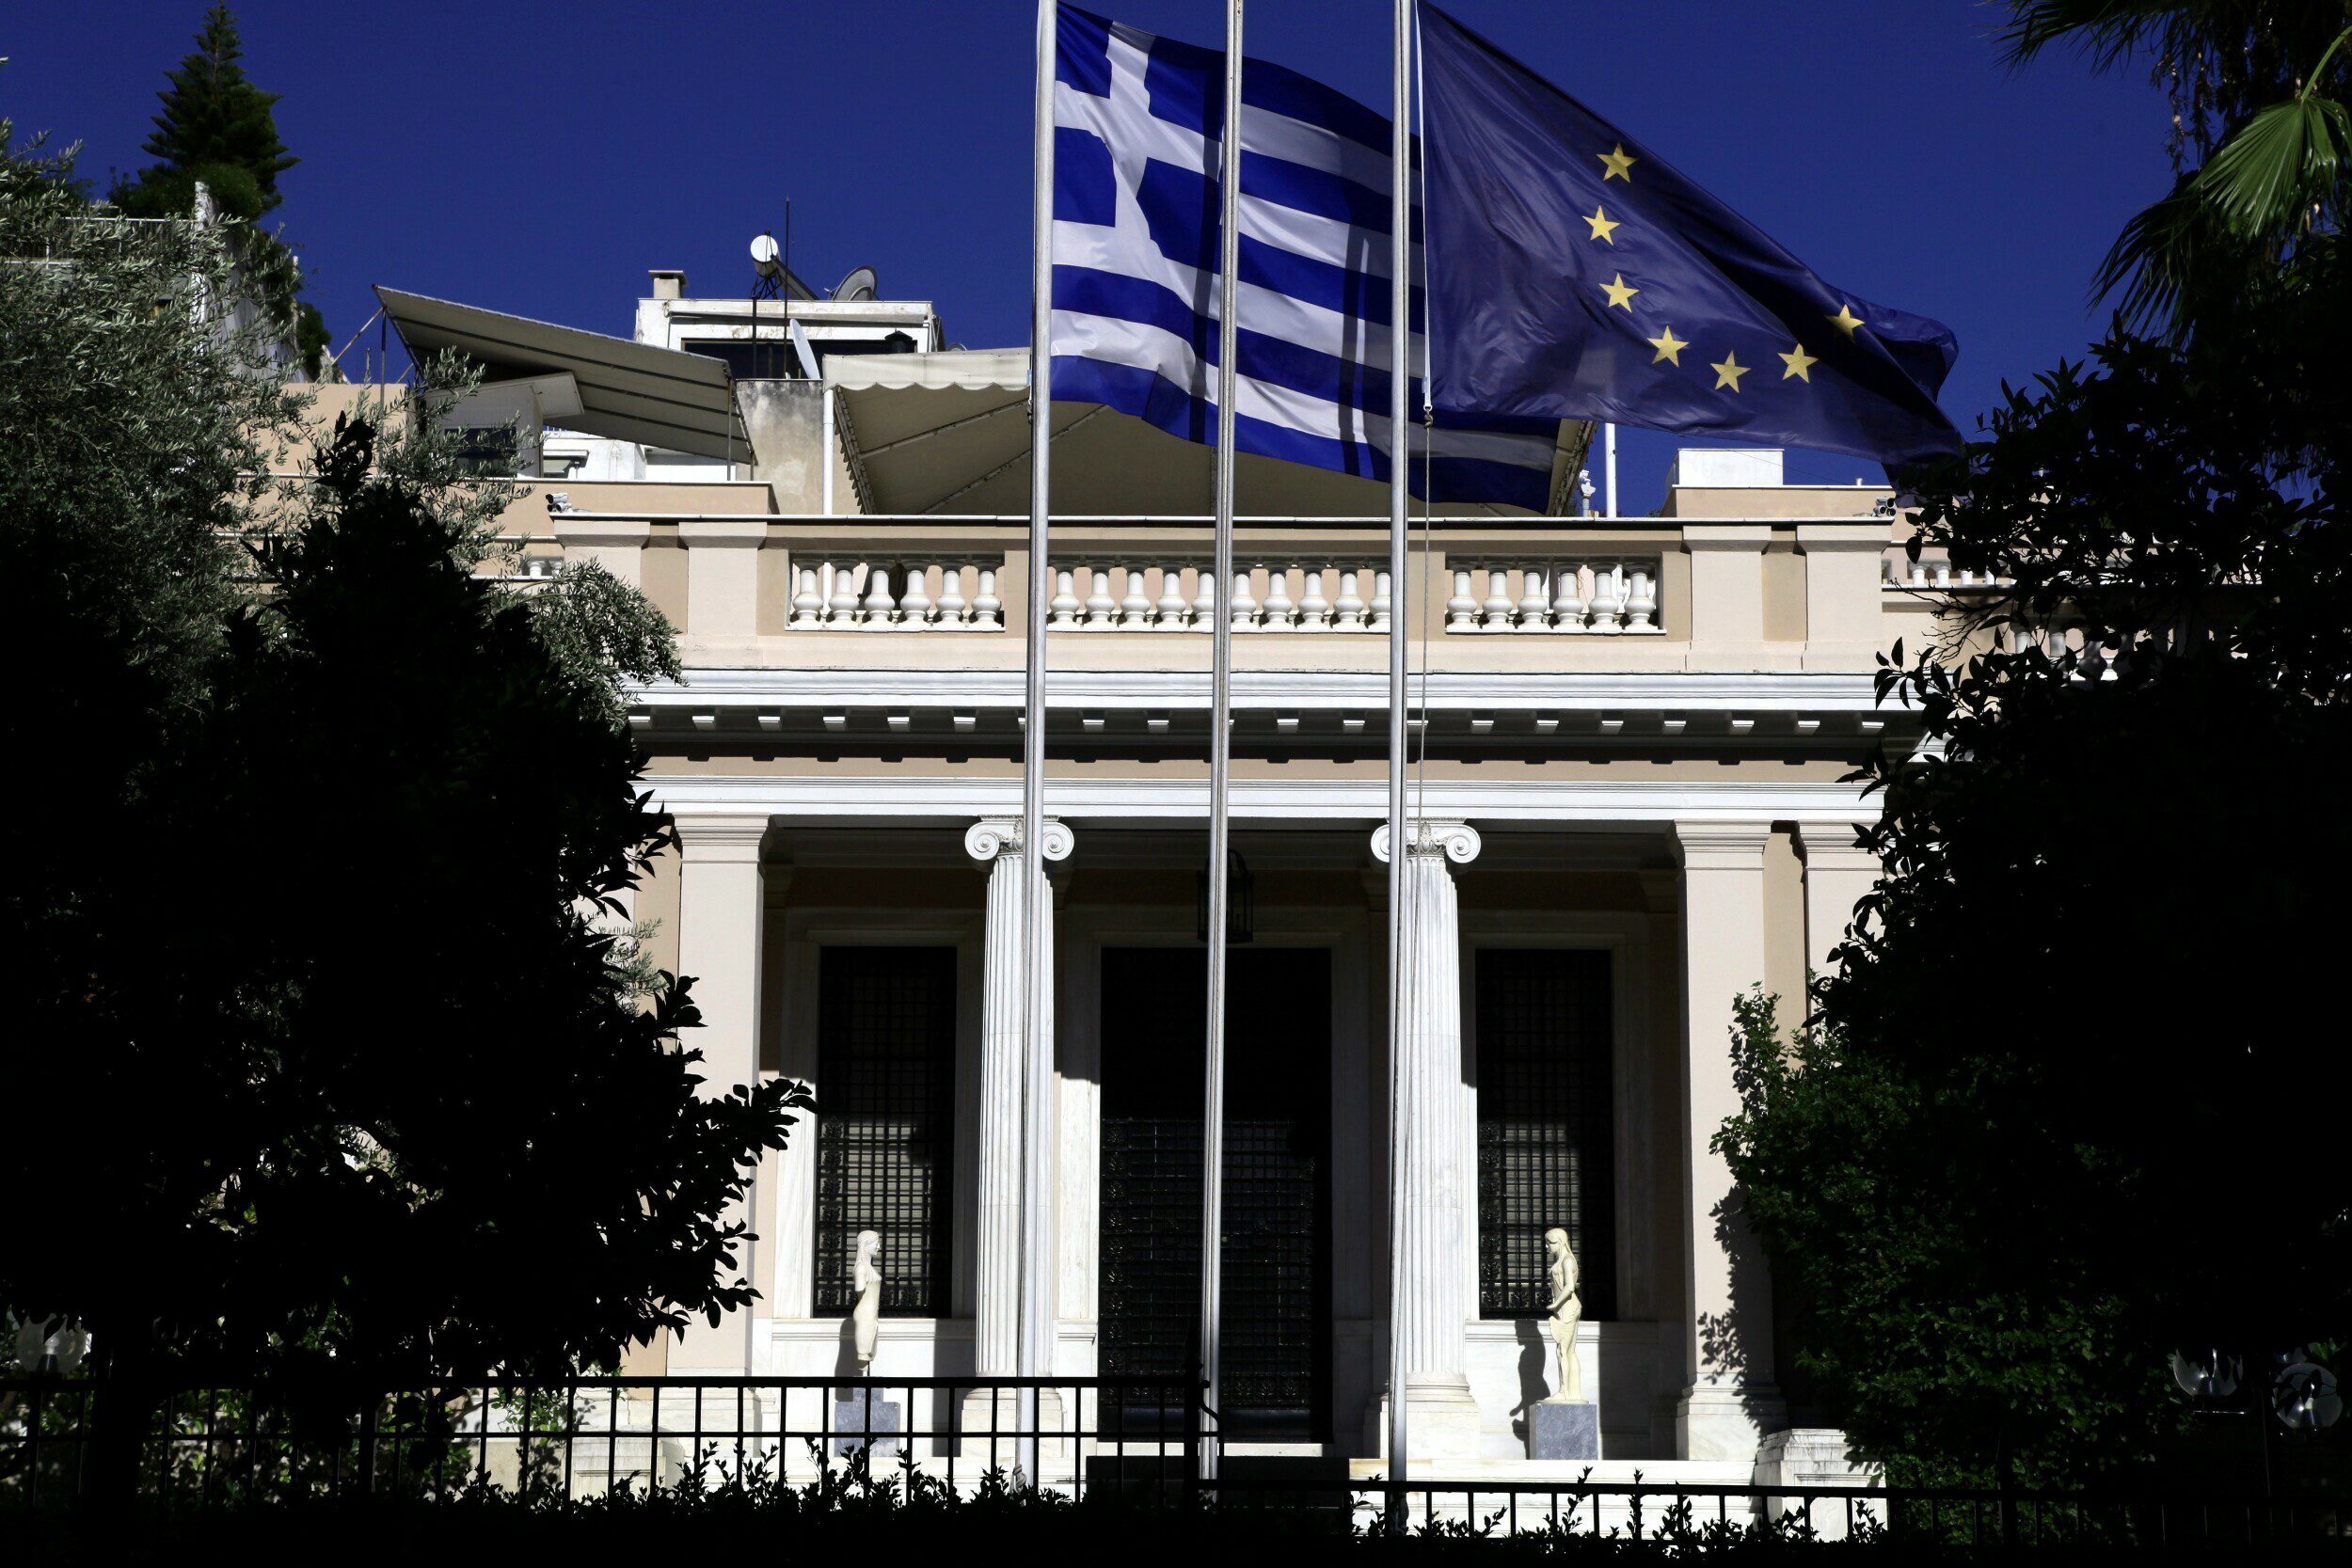 Ικανοποίηση Μητσοτάκη από την Σύνοδο Κορυφής για το μεταναστευτικό – Υιοθετούνται βασικές ελληνικές θέσεις, αναφέρουν κυβερνητικές πηγές